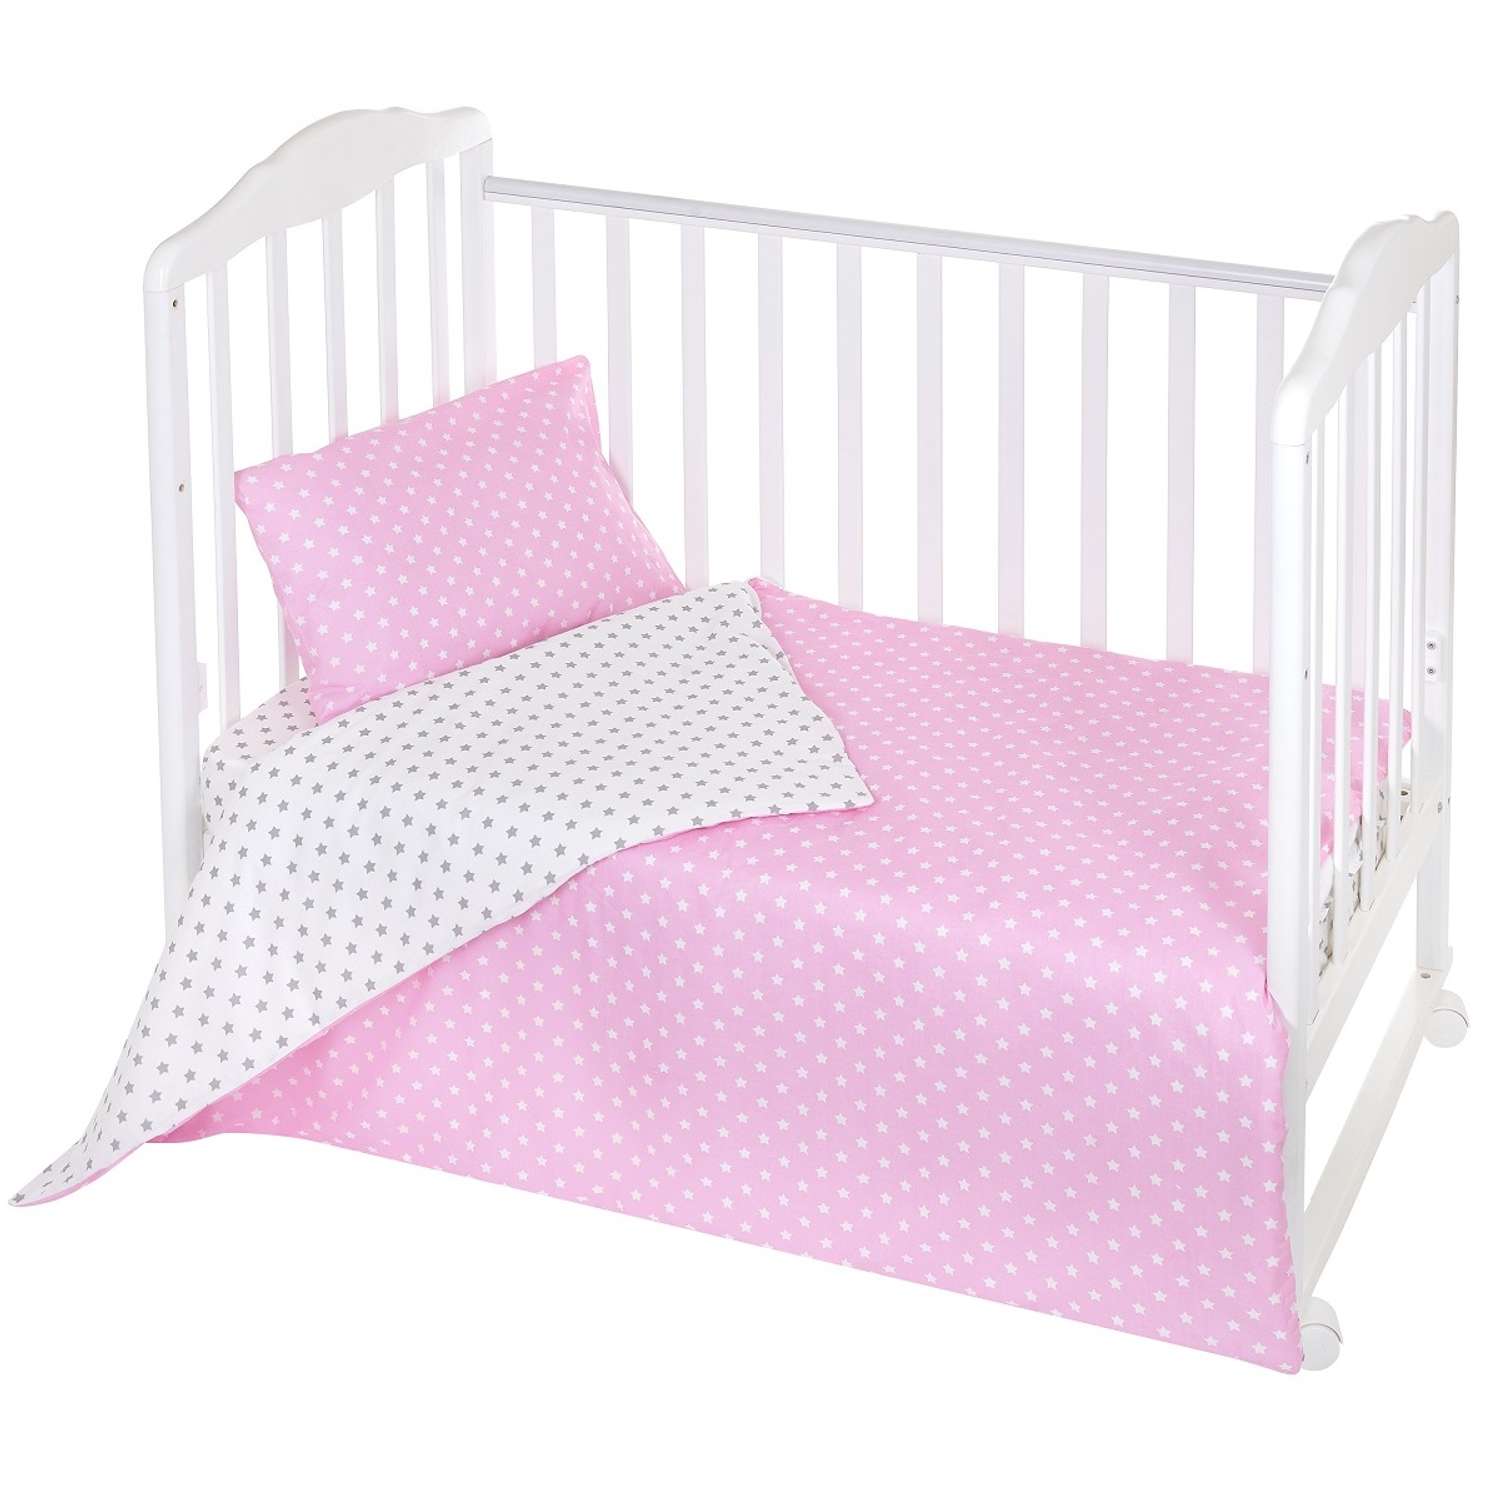 Комплект постельного белья Lemony kids Starfall Розовый/белый 3 предмета - фото 1